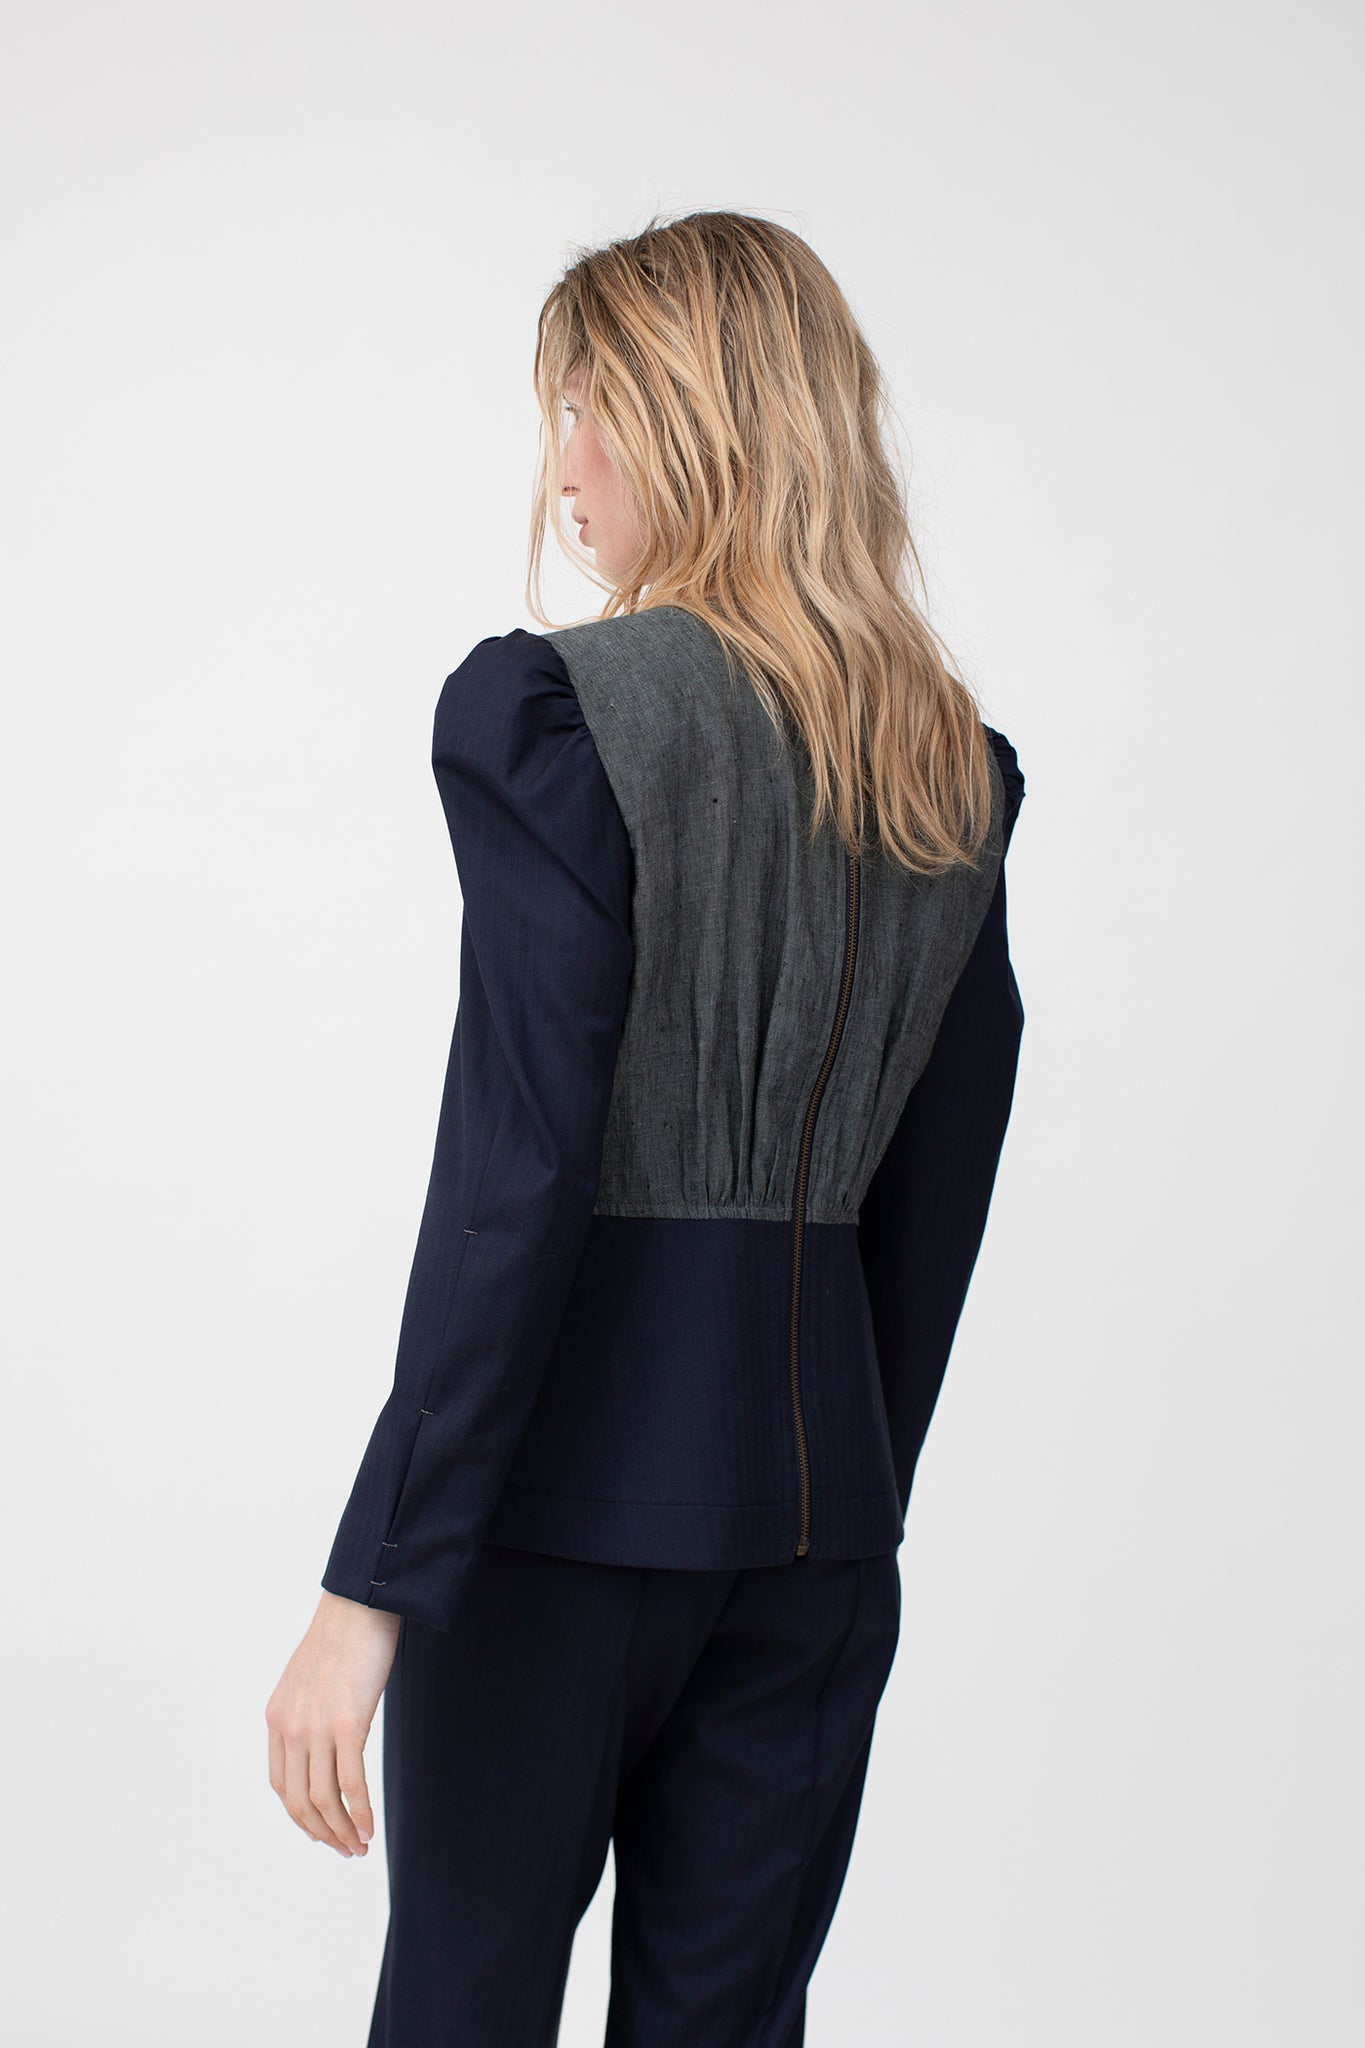 Power sleeve tailored top in Irish linen and navy herringbone luxury fine wool